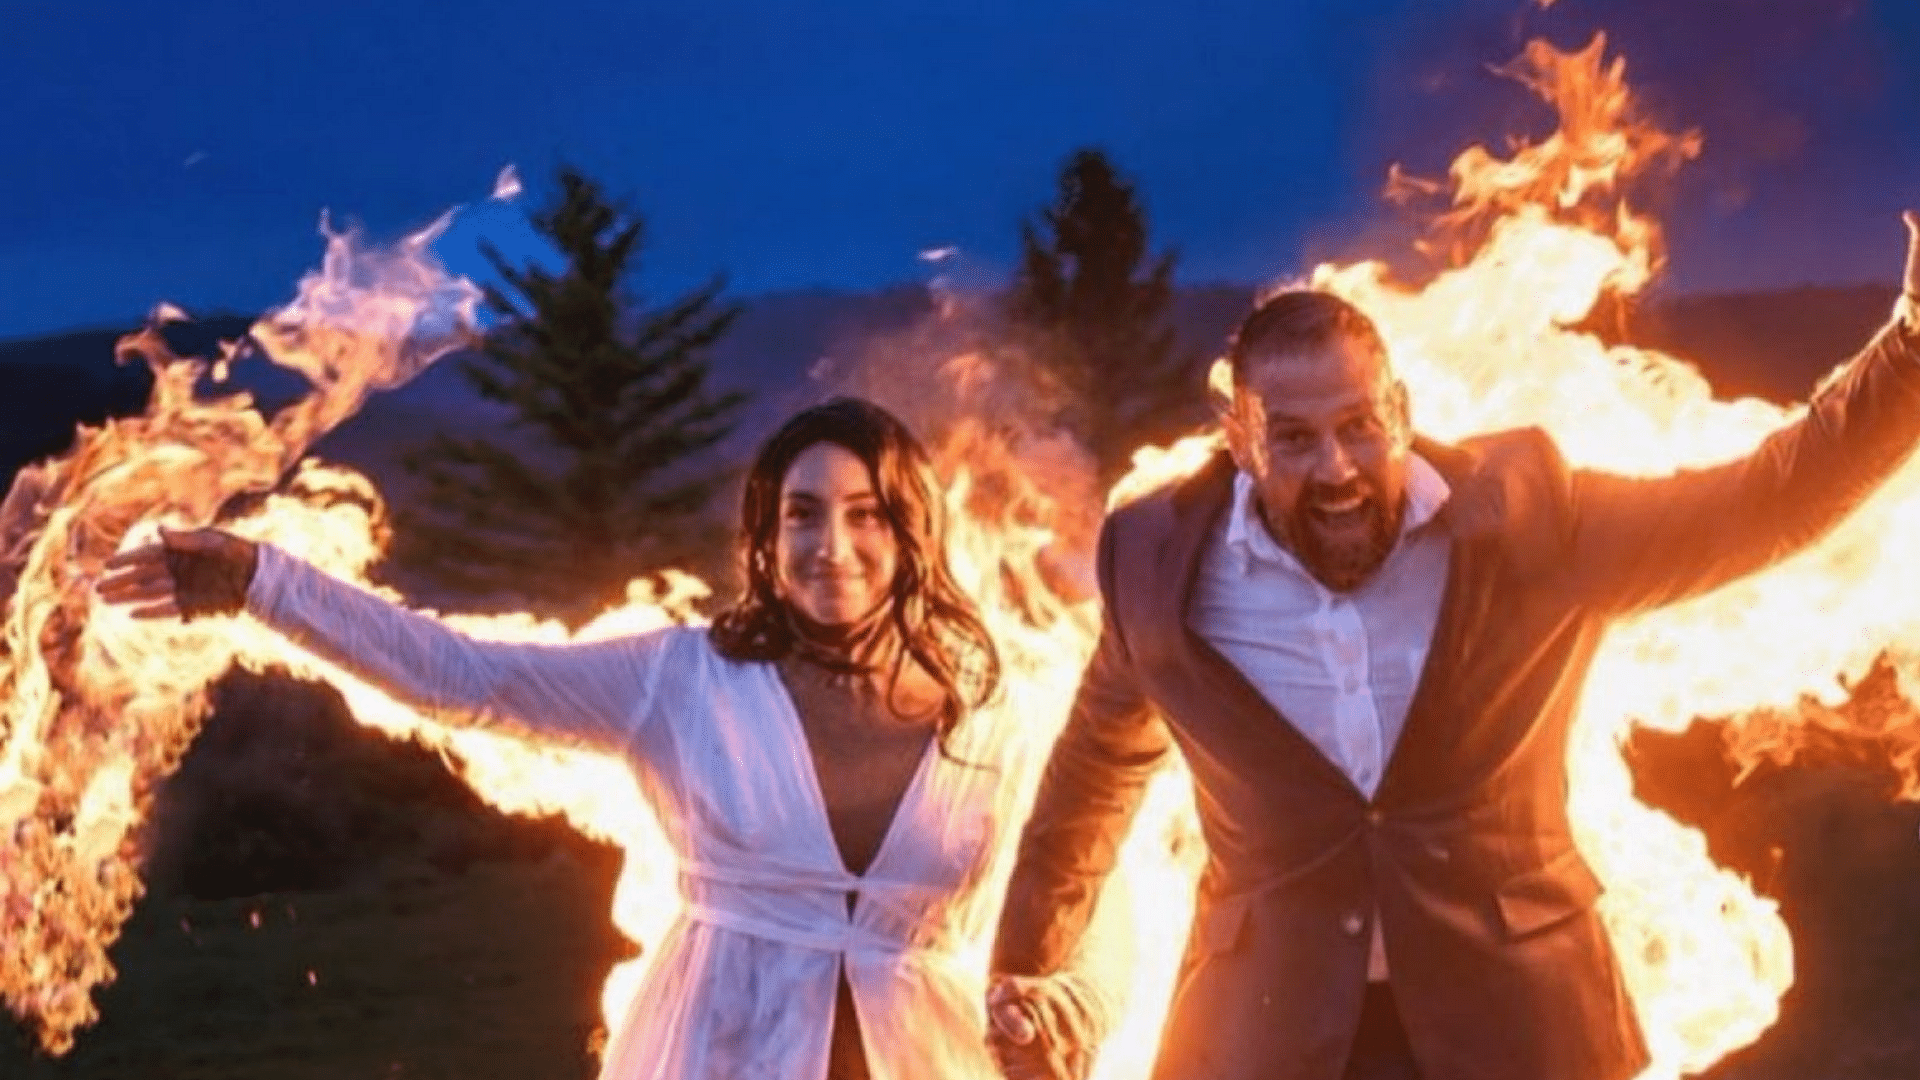 <div class="paragraphs"><p>Couple exits wedding on fire in unique stunt.</p></div>